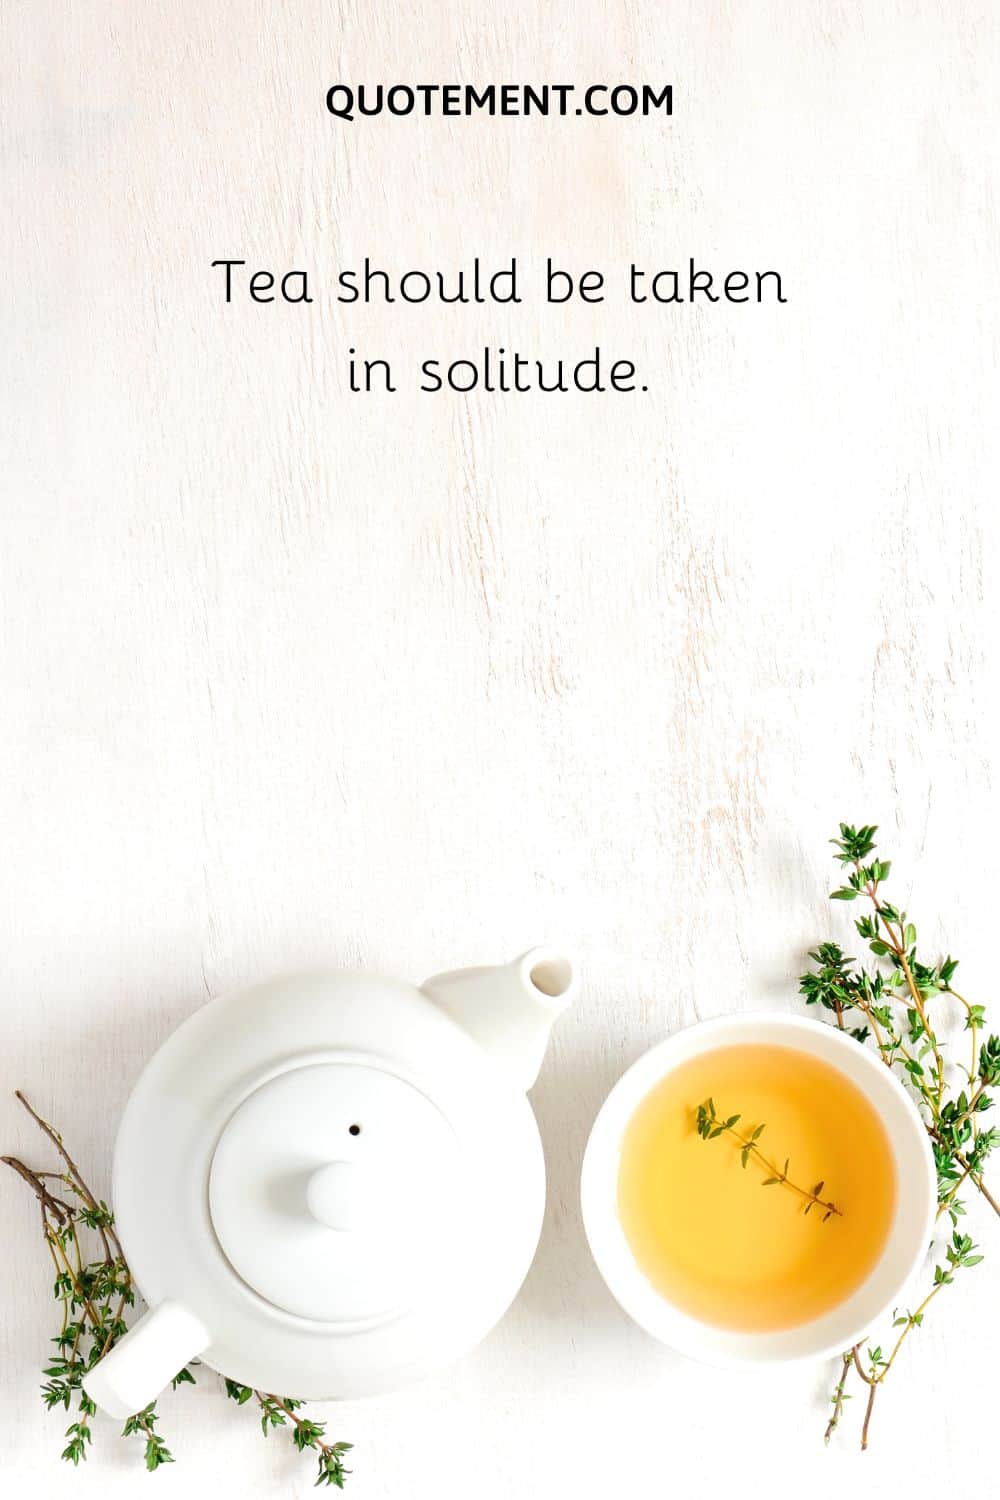 Tea should be taken in solitude.